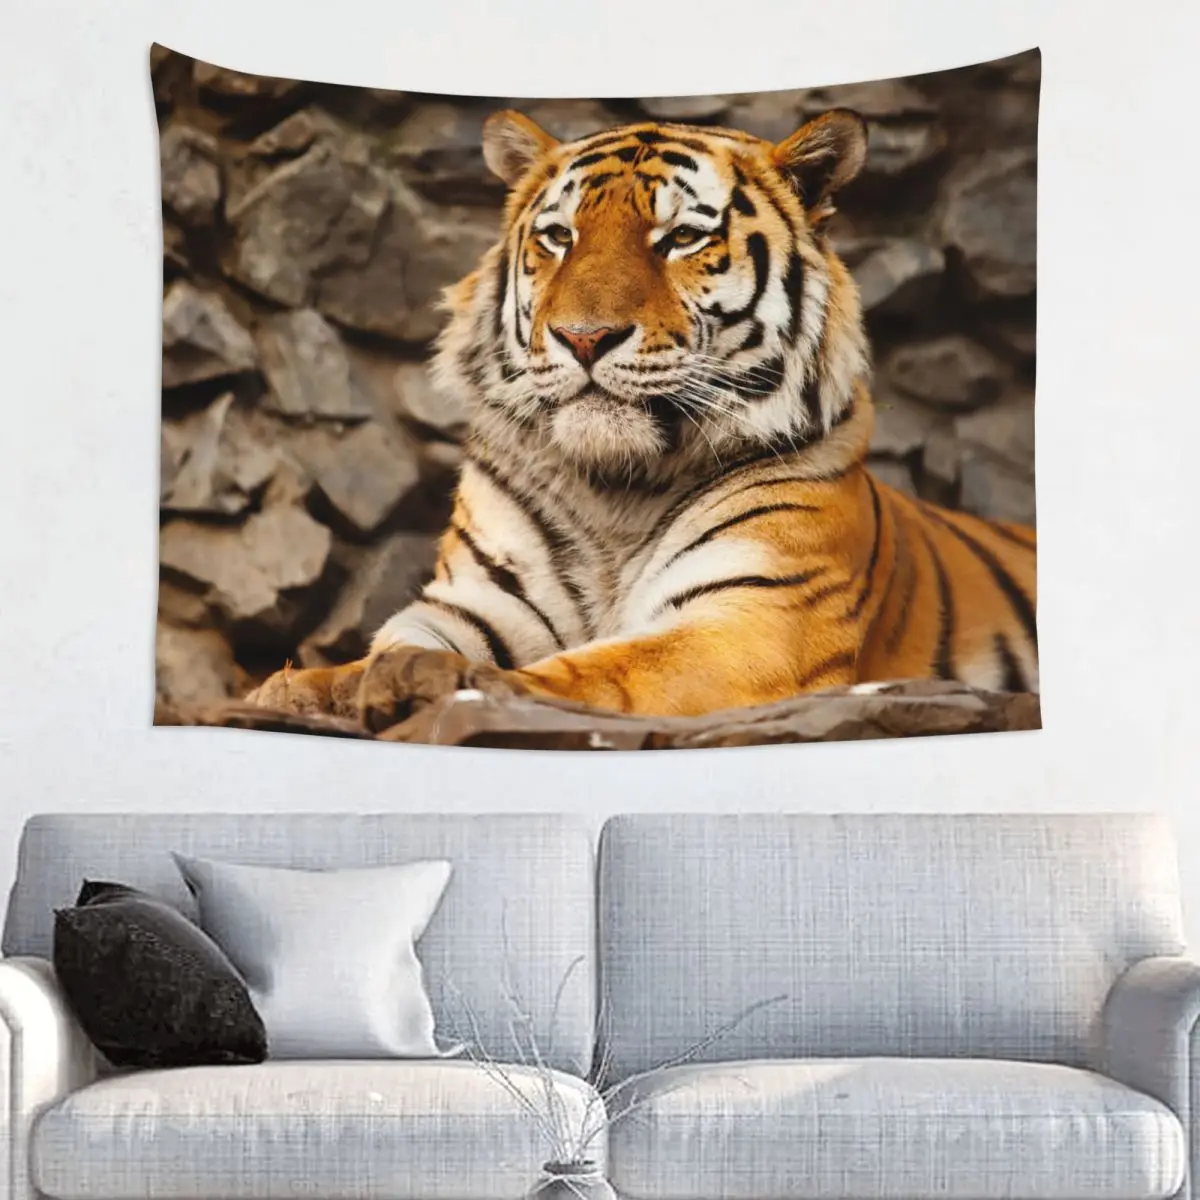 Гобелен с сибирским тигром из полиэстера в стиле хиппи, настенный декор для любителей животных, коврик для йоги, настенное одеяло с мандалой.